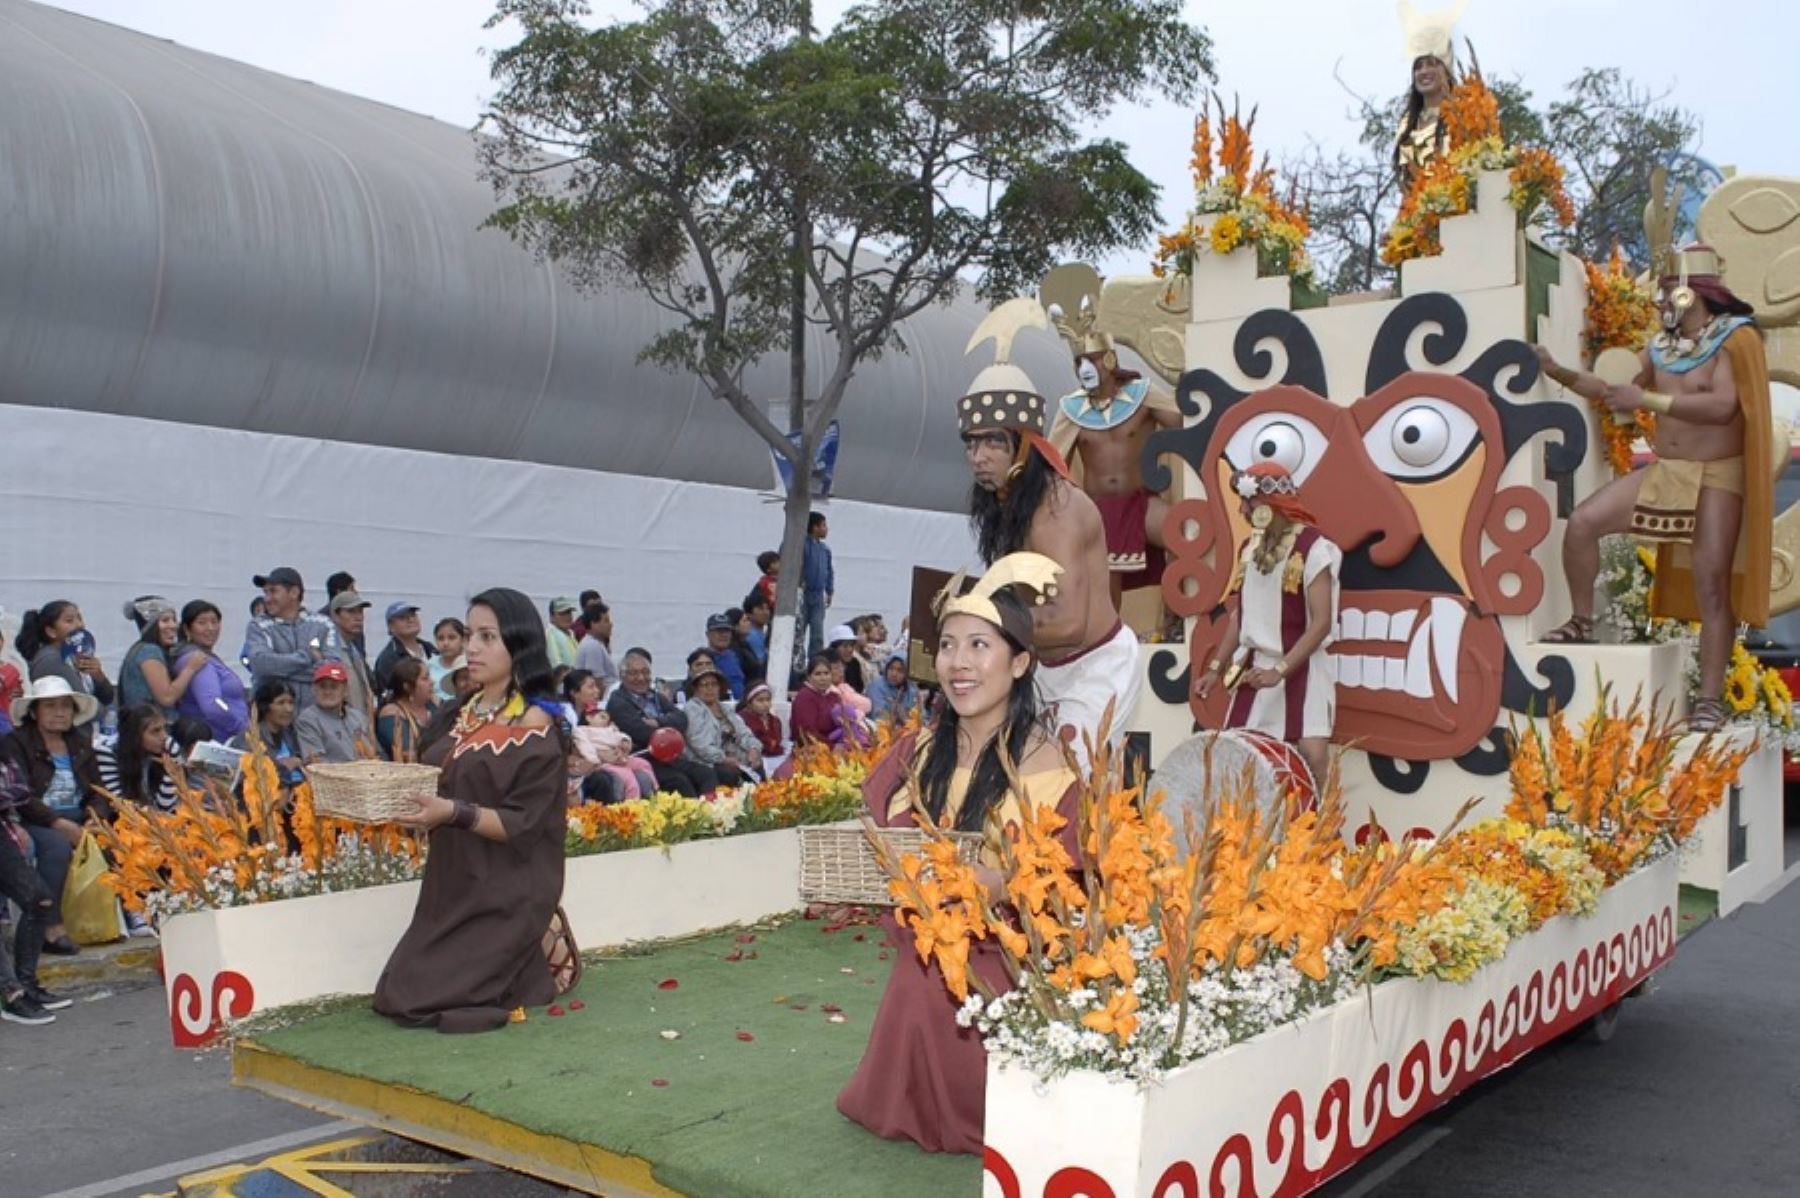 Luego de dos años de suspensión debido a la emergencia sanitaria por la pandemia, volverá a realizarse, del 5 al 9 de octubre, el Festival Internacional de la Primavera en la preciosa ciudad de Trujillo,